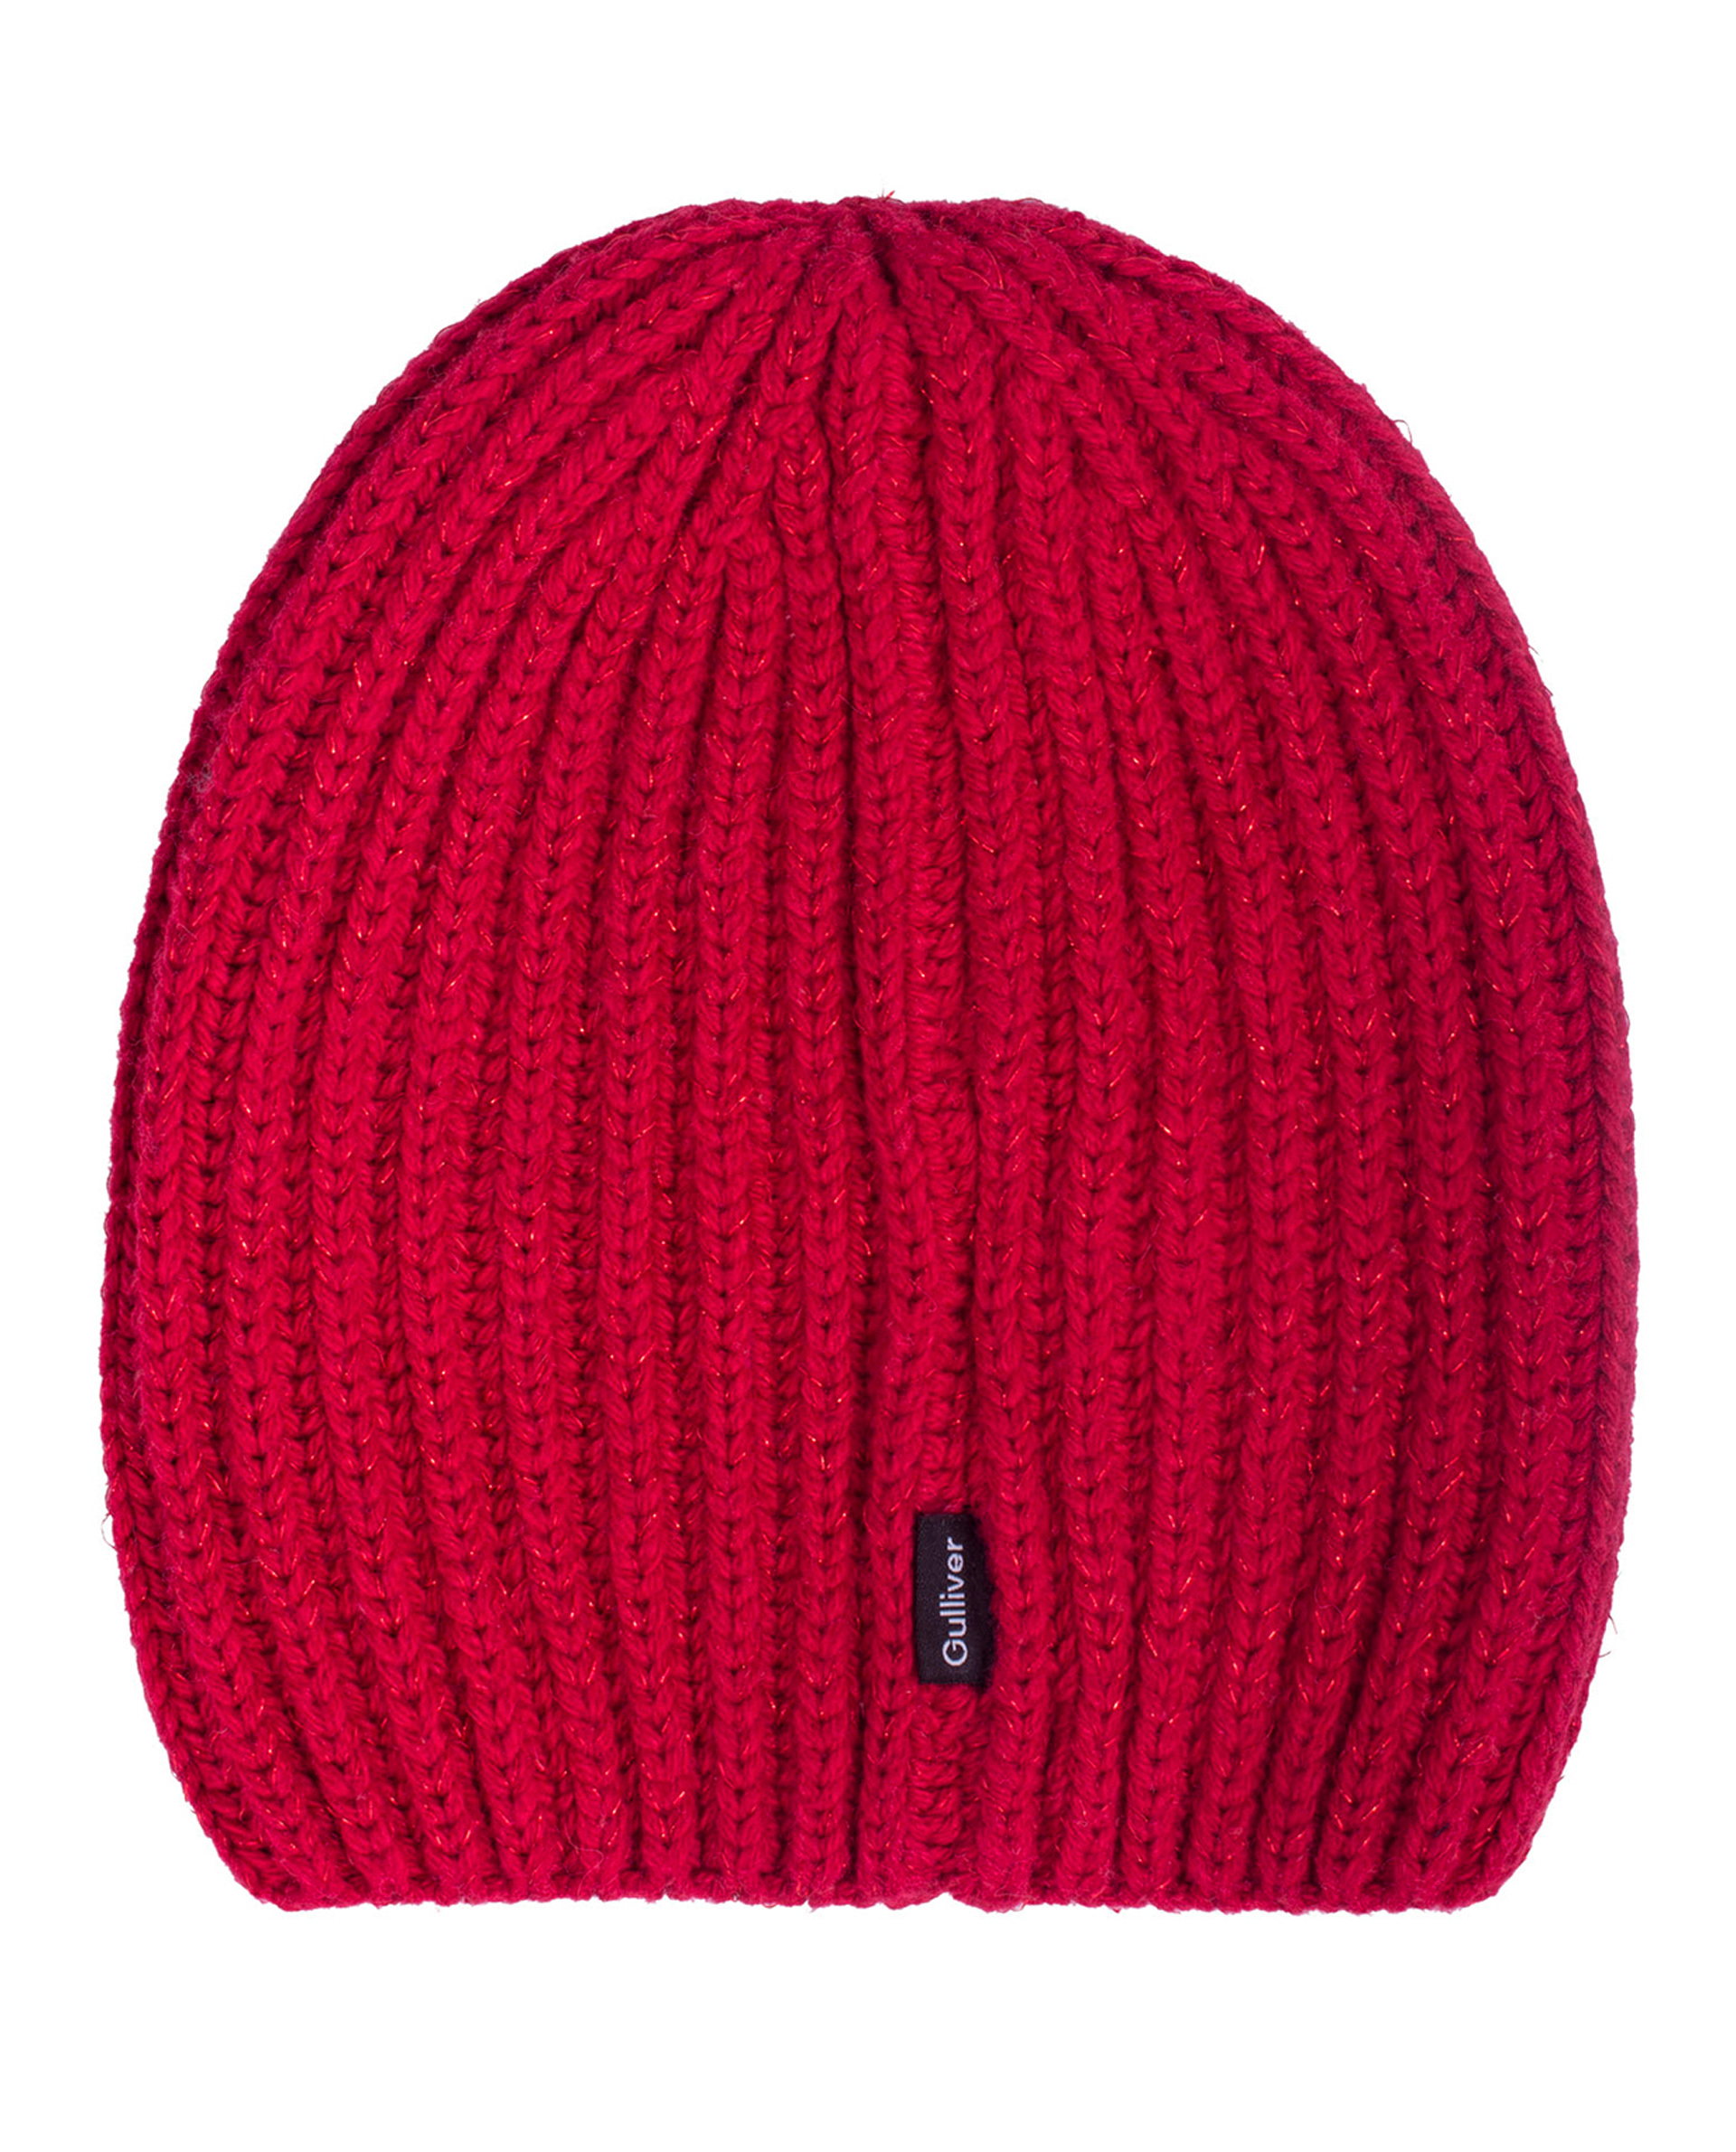 Красная вязаная шапка с люрексом Gulliver 21805GKC7302, размер 52 - фото 2